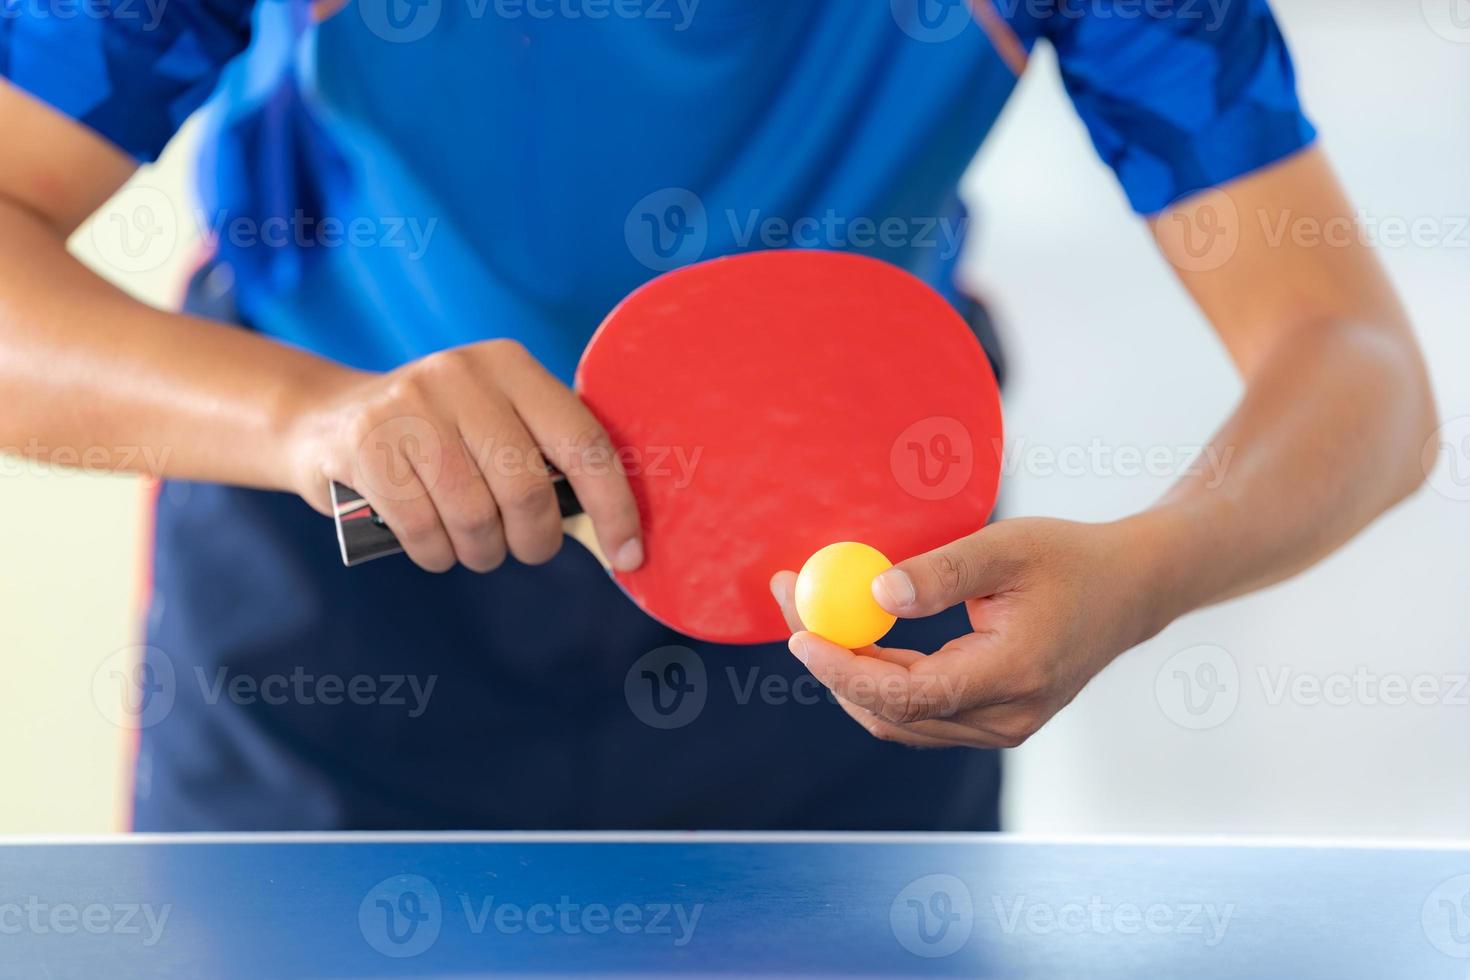 masculino jogando tênis de mesa com raquete e bola em um ginásio esportivo foto